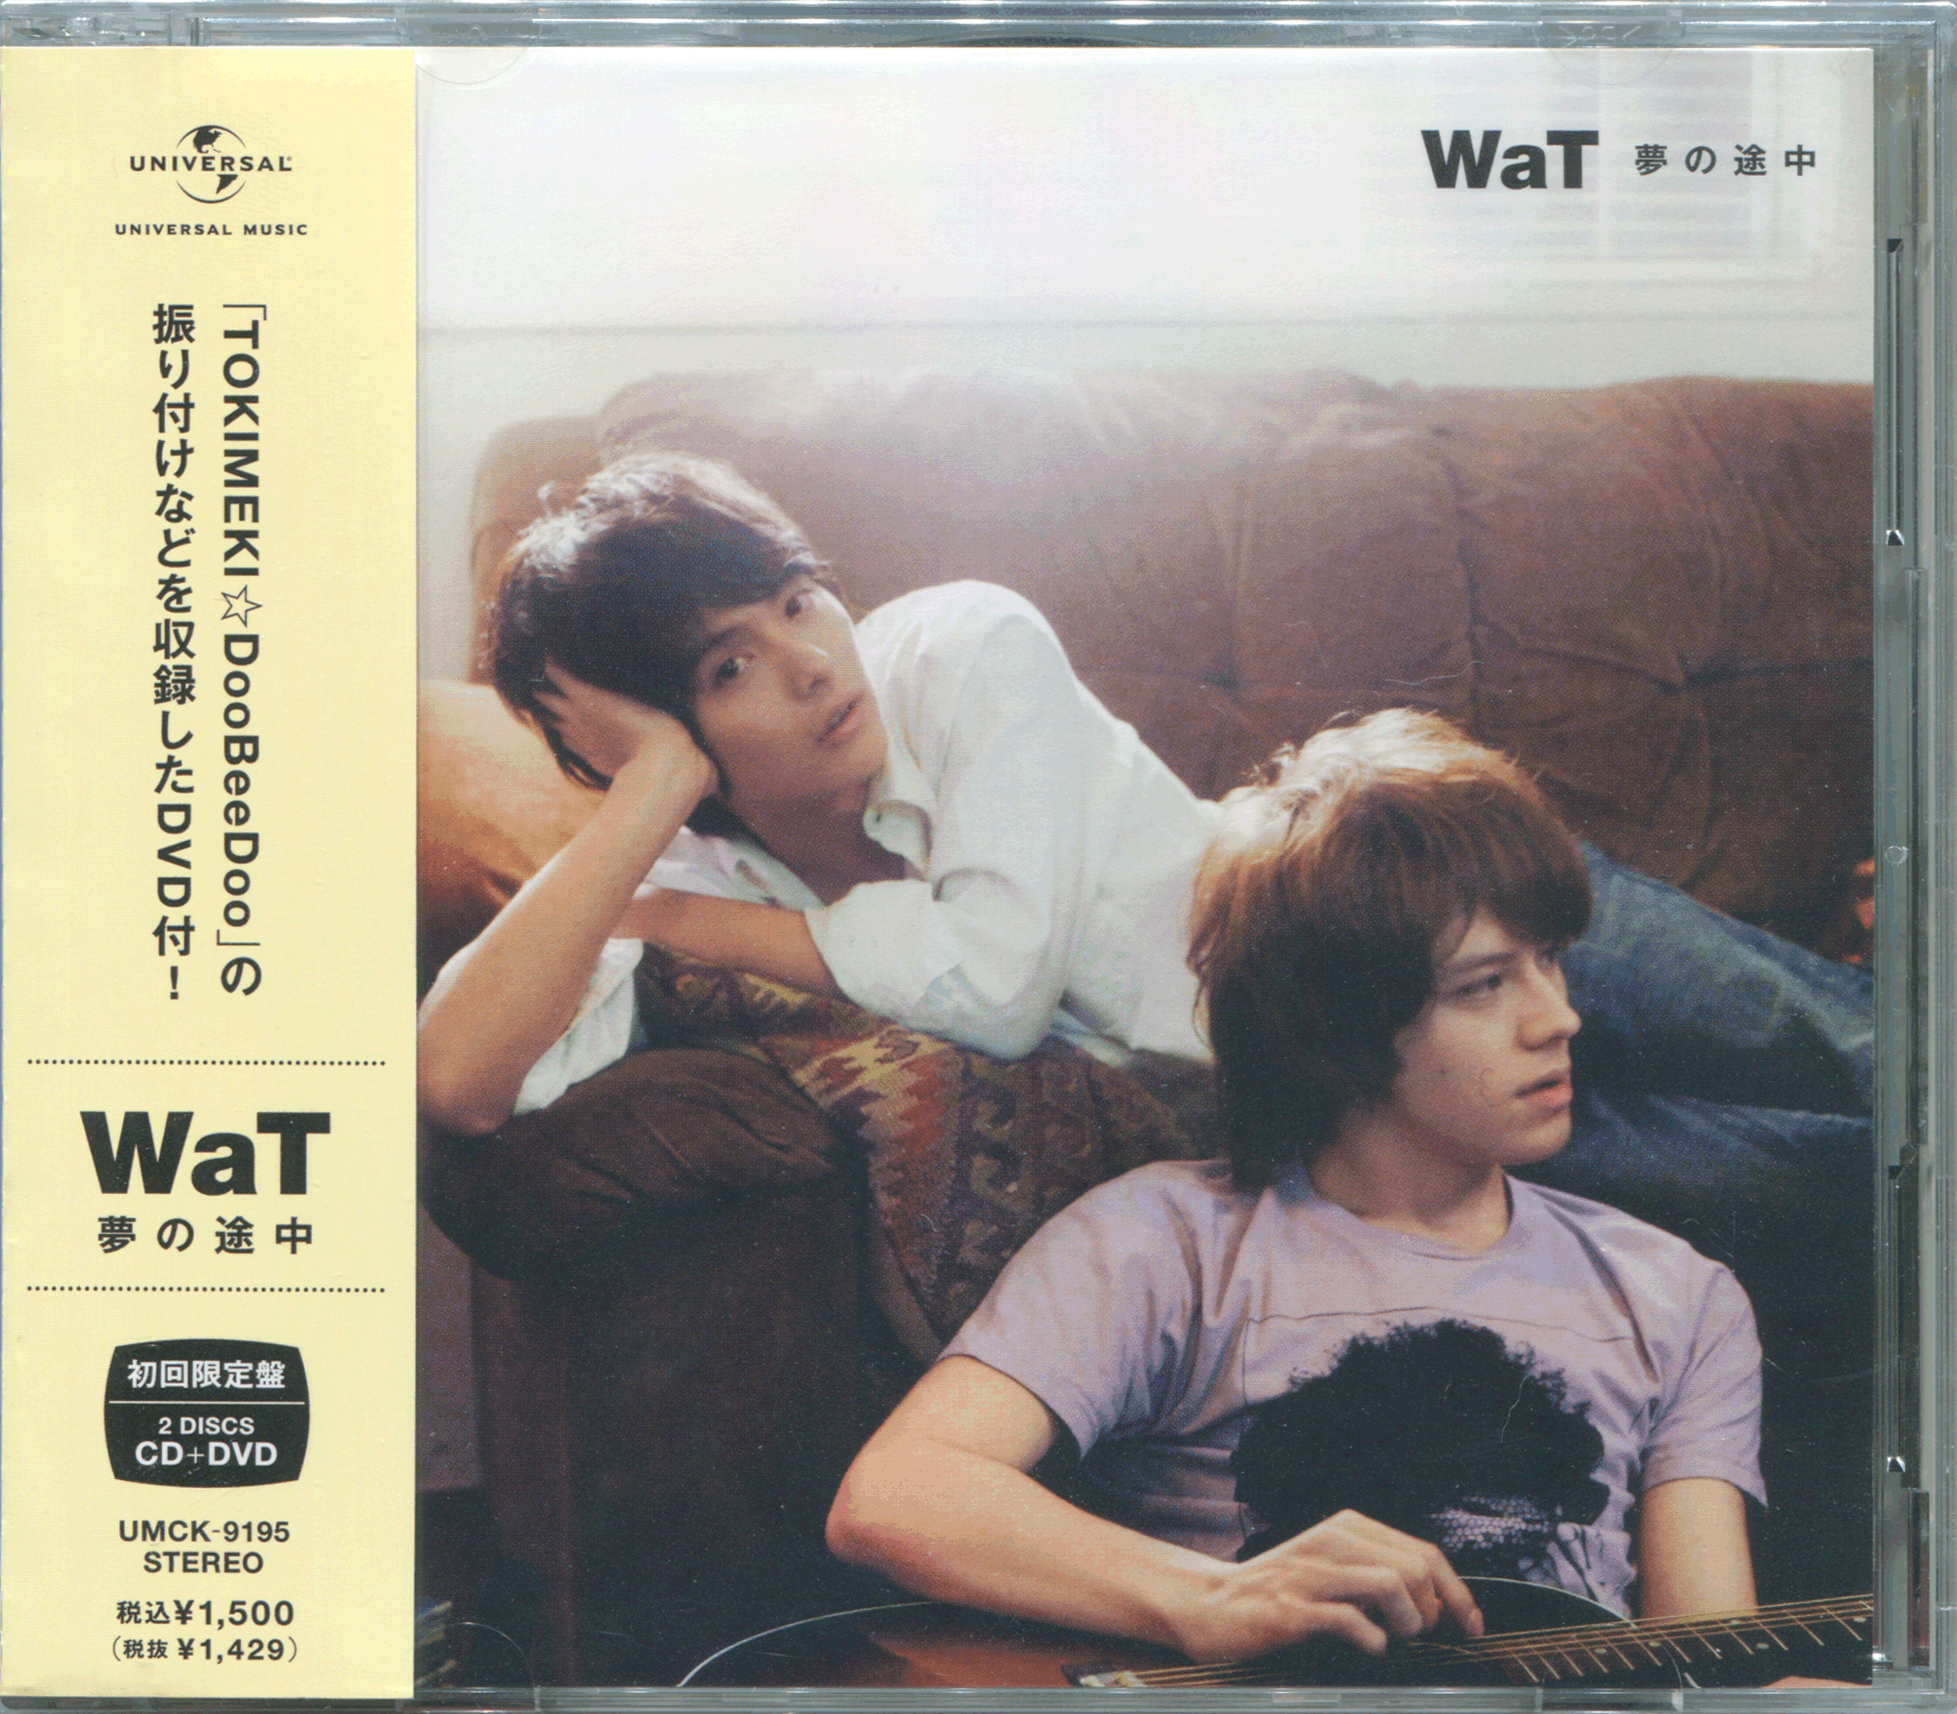 WaT 2008 CD COVER